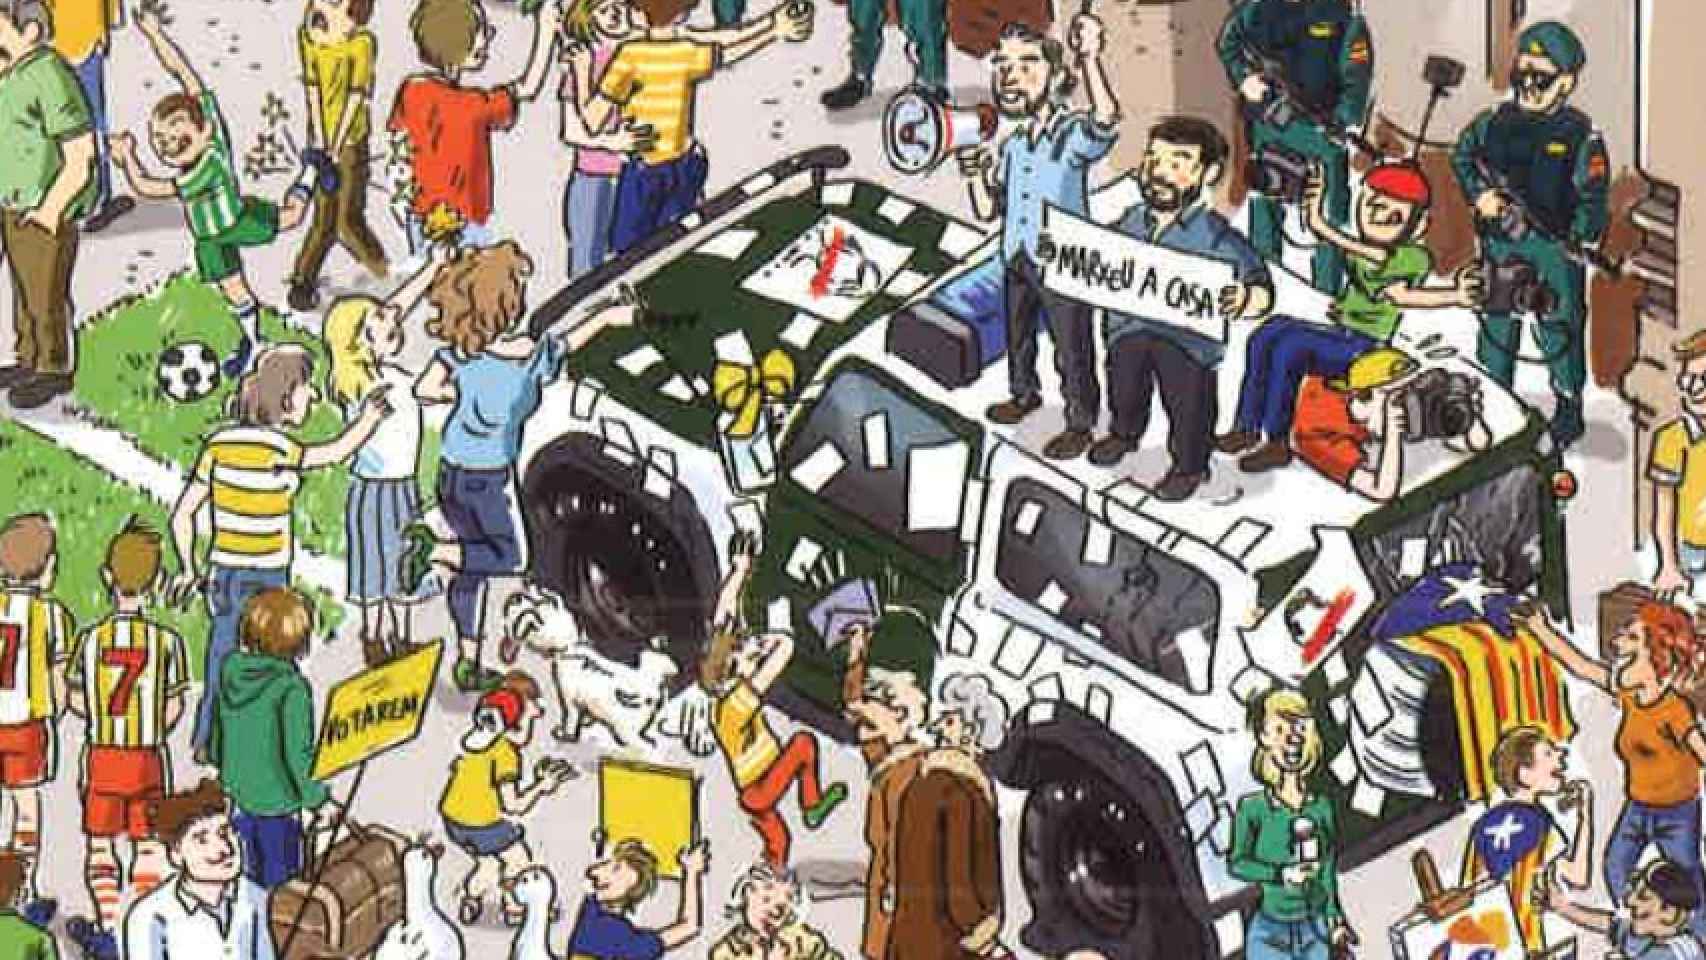 El libro también recoge algunas de las escenas más destacadas en torno al 1-O, como a los 'Jordis' encima de un coche de la Guardia Civil.